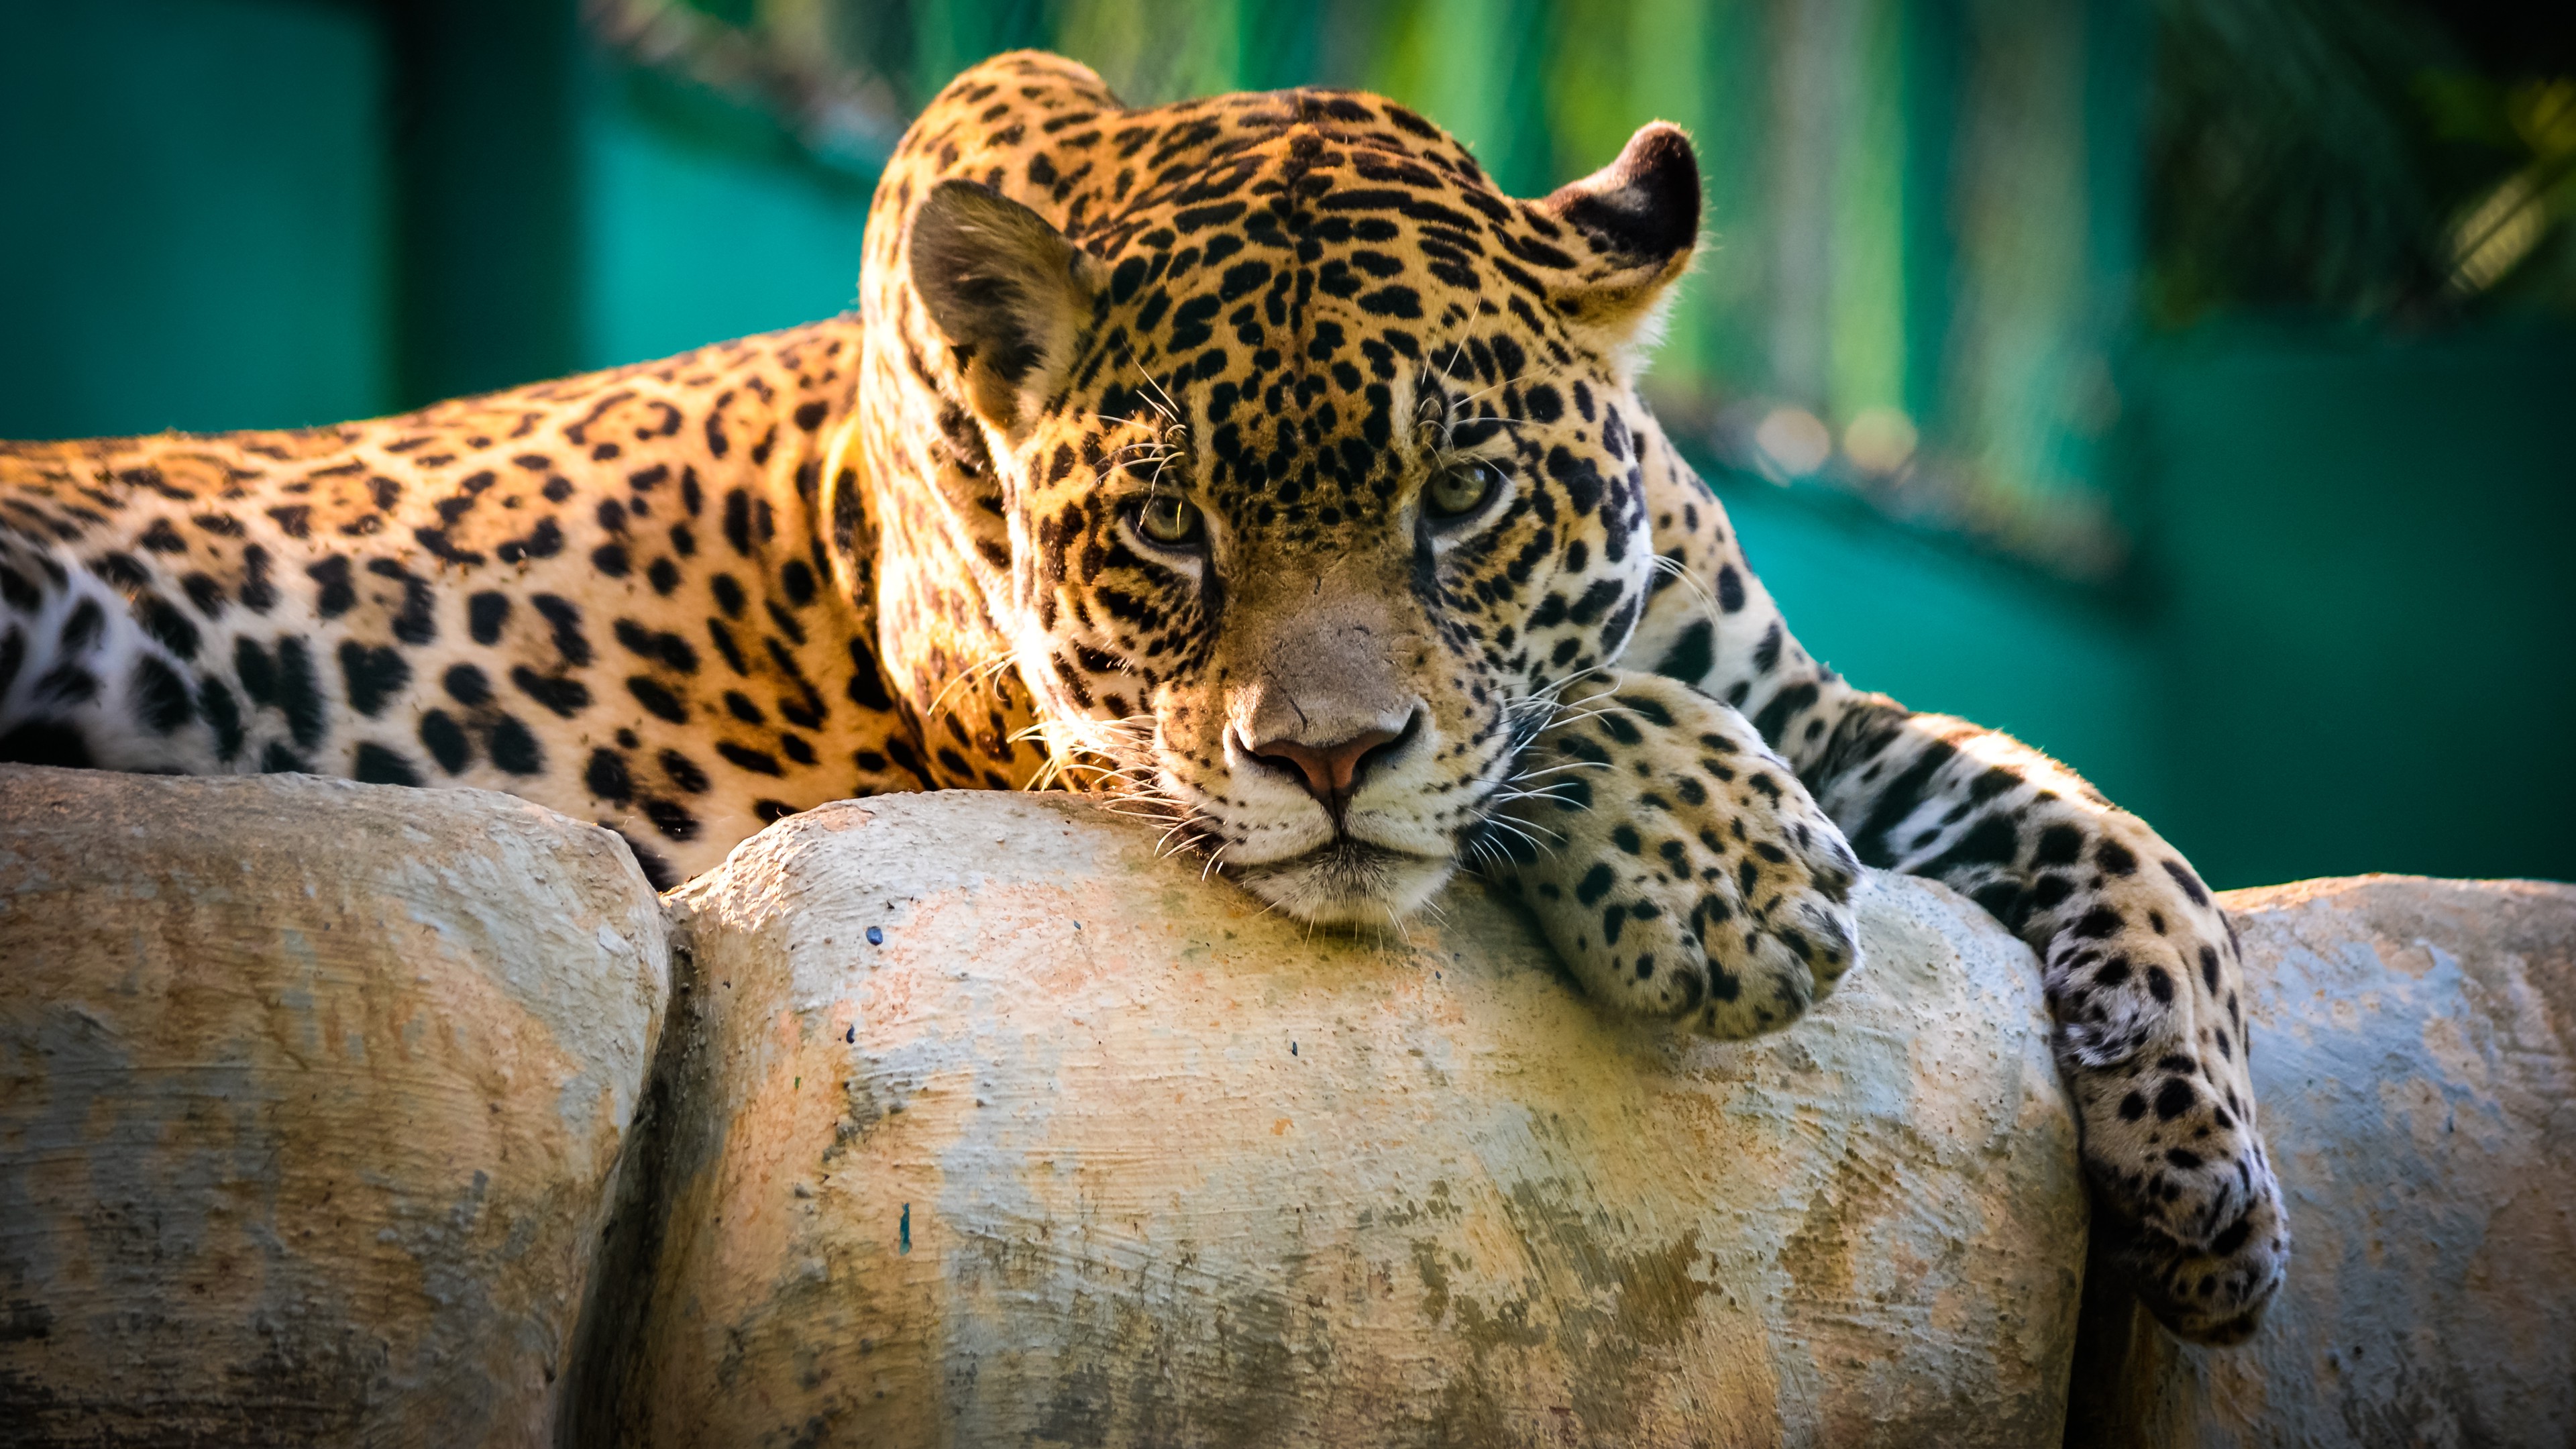 A vacationing jaguar